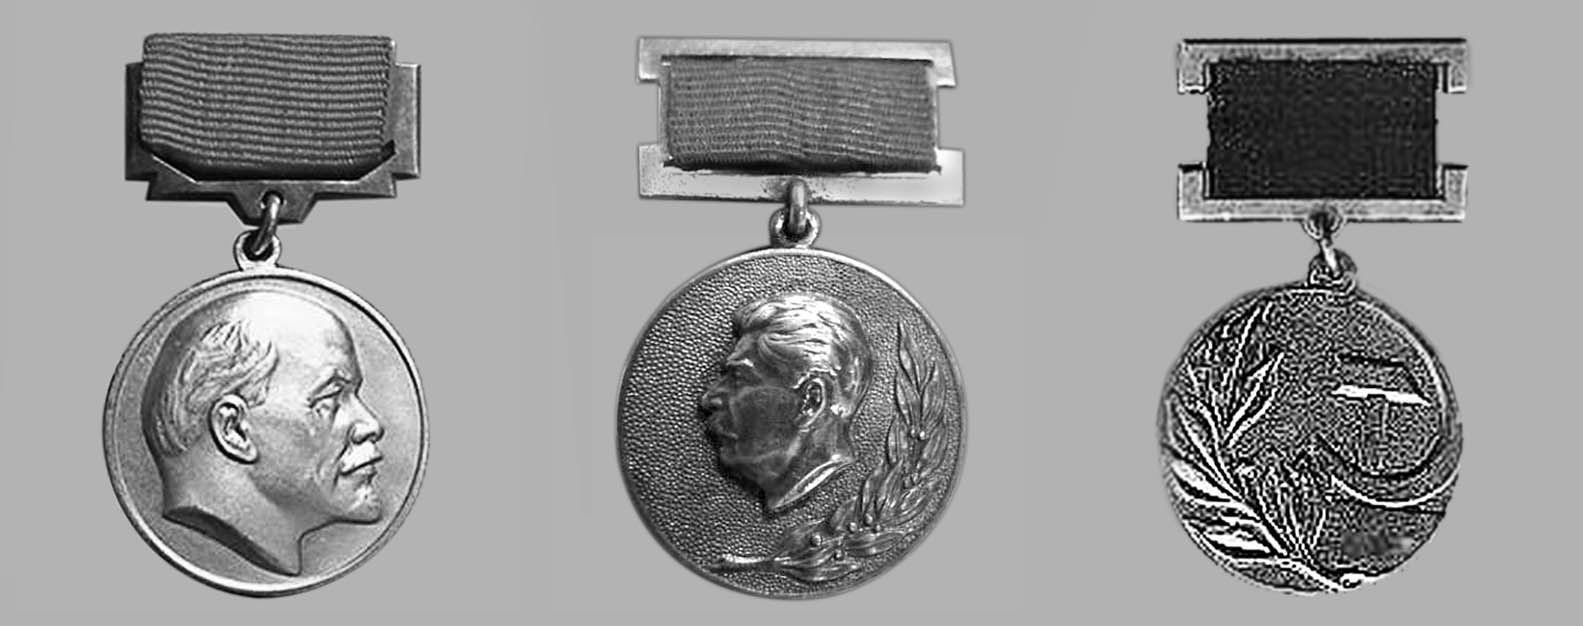 Державні премії СРСР